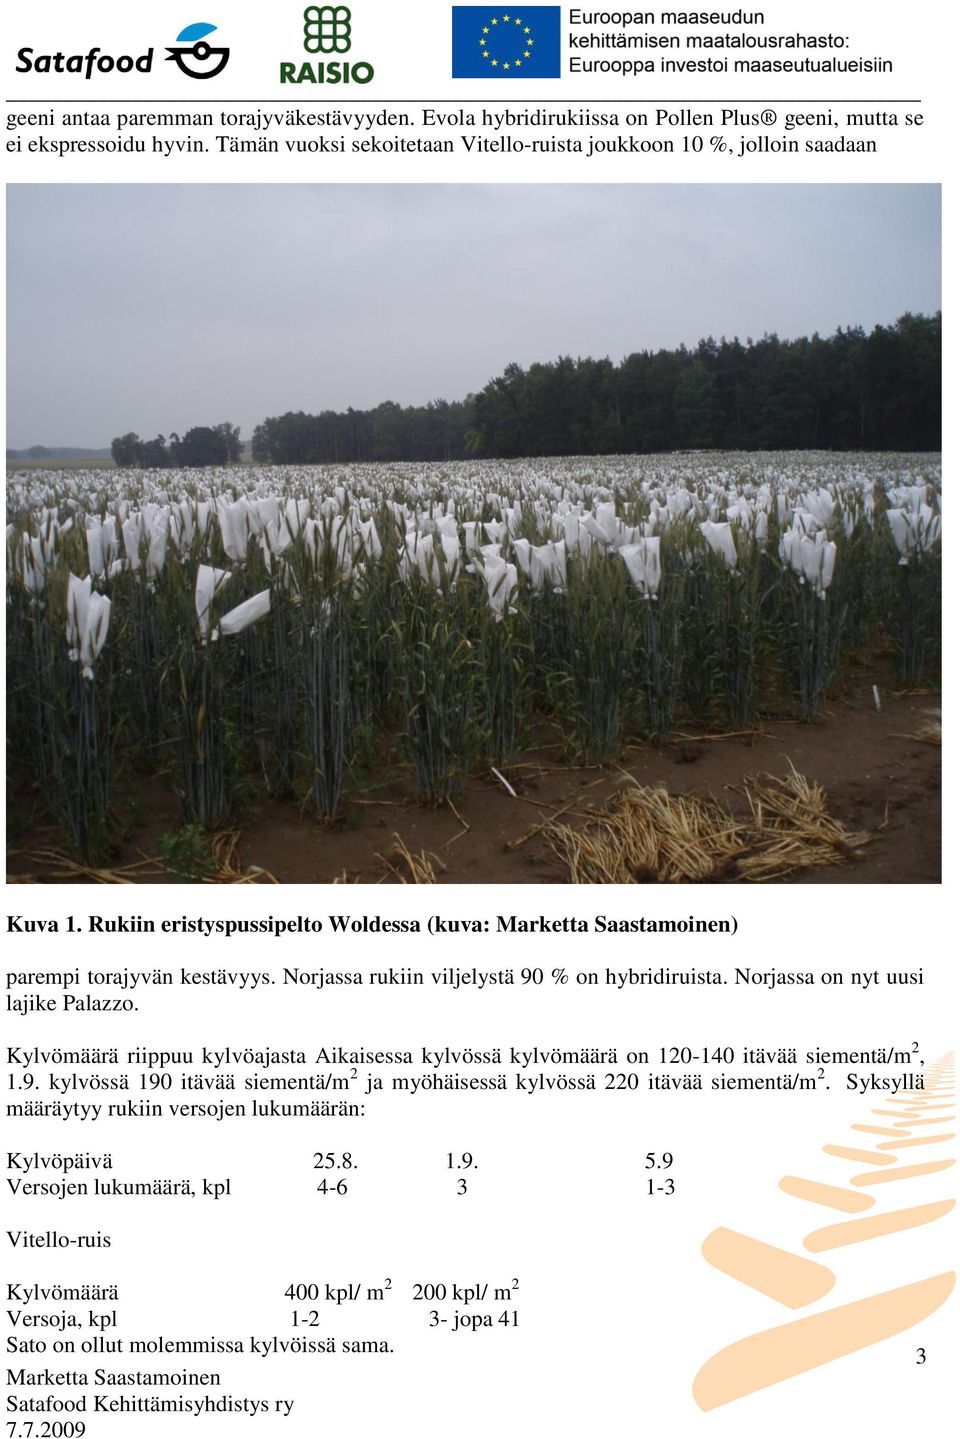 Norjassa rukiin viljelystä 90 % on hybridiruista. Norjassa on nyt uusi lajike Palazzo. Kylvömäärä riippuu kylvöajasta Aikaisessa kylvössä kylvömäärä on 120-140 itävää siementä/m 2, 1.9. kylvössä 190 itävää siementä/m 2 ja myöhäisessä kylvössä 220 itävää siementä/m 2.